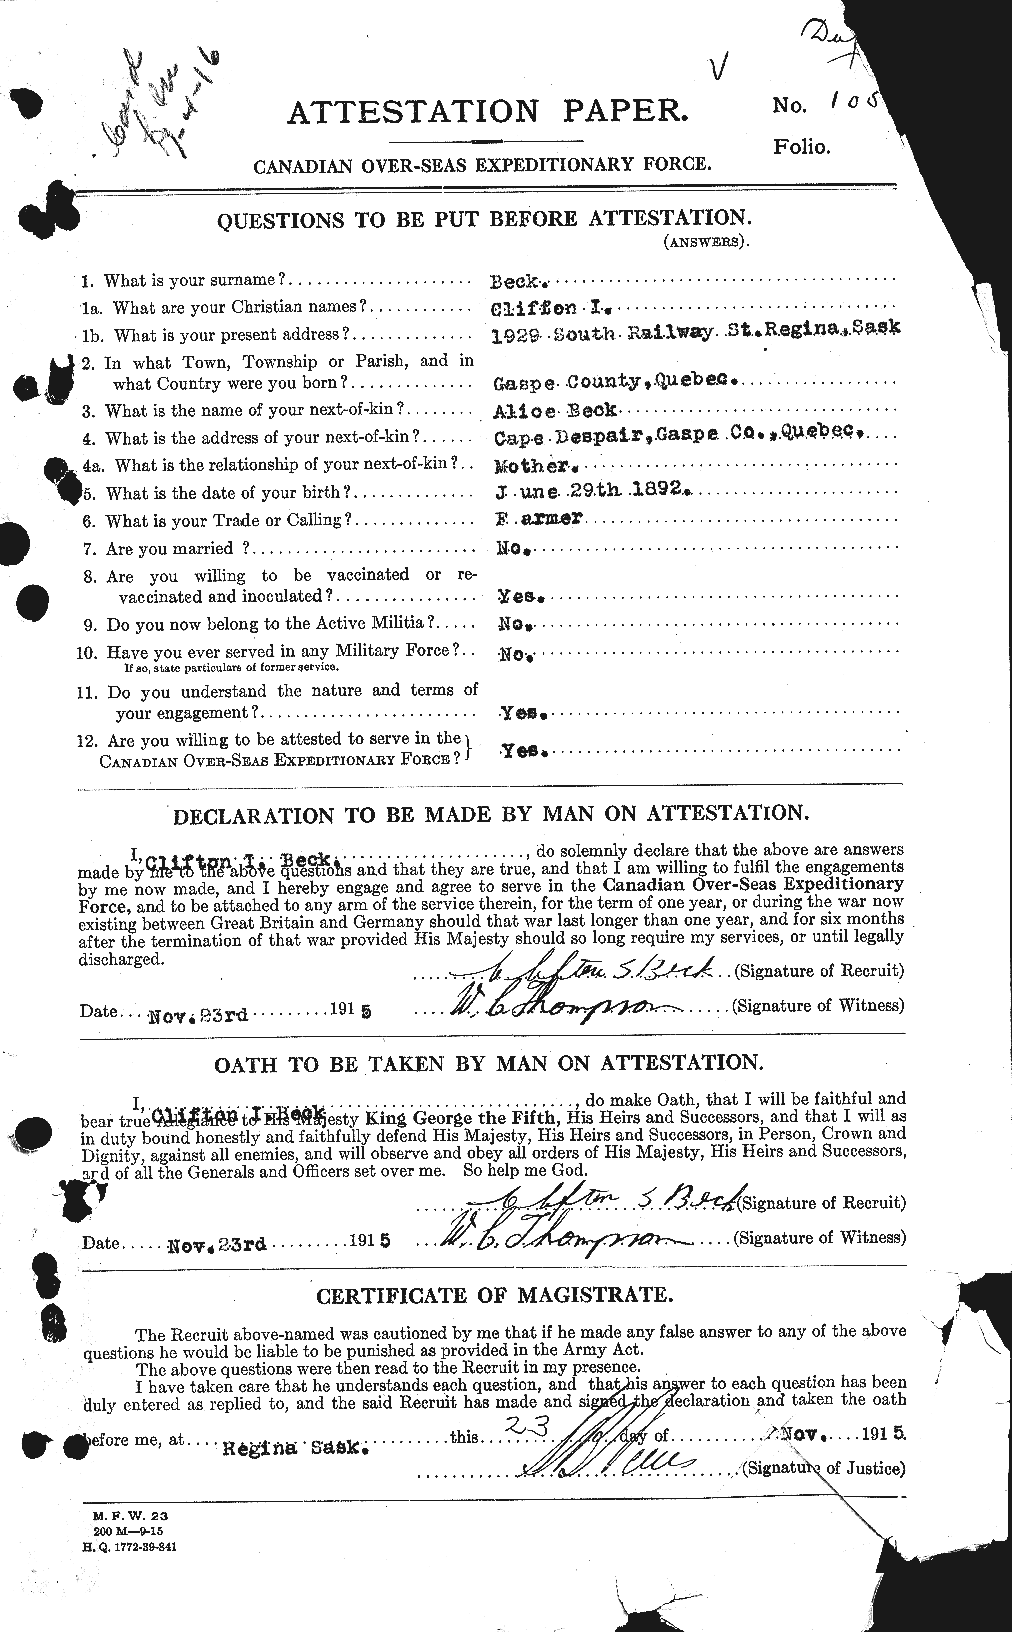 Dossiers du Personnel de la Première Guerre mondiale - CEC 232100a